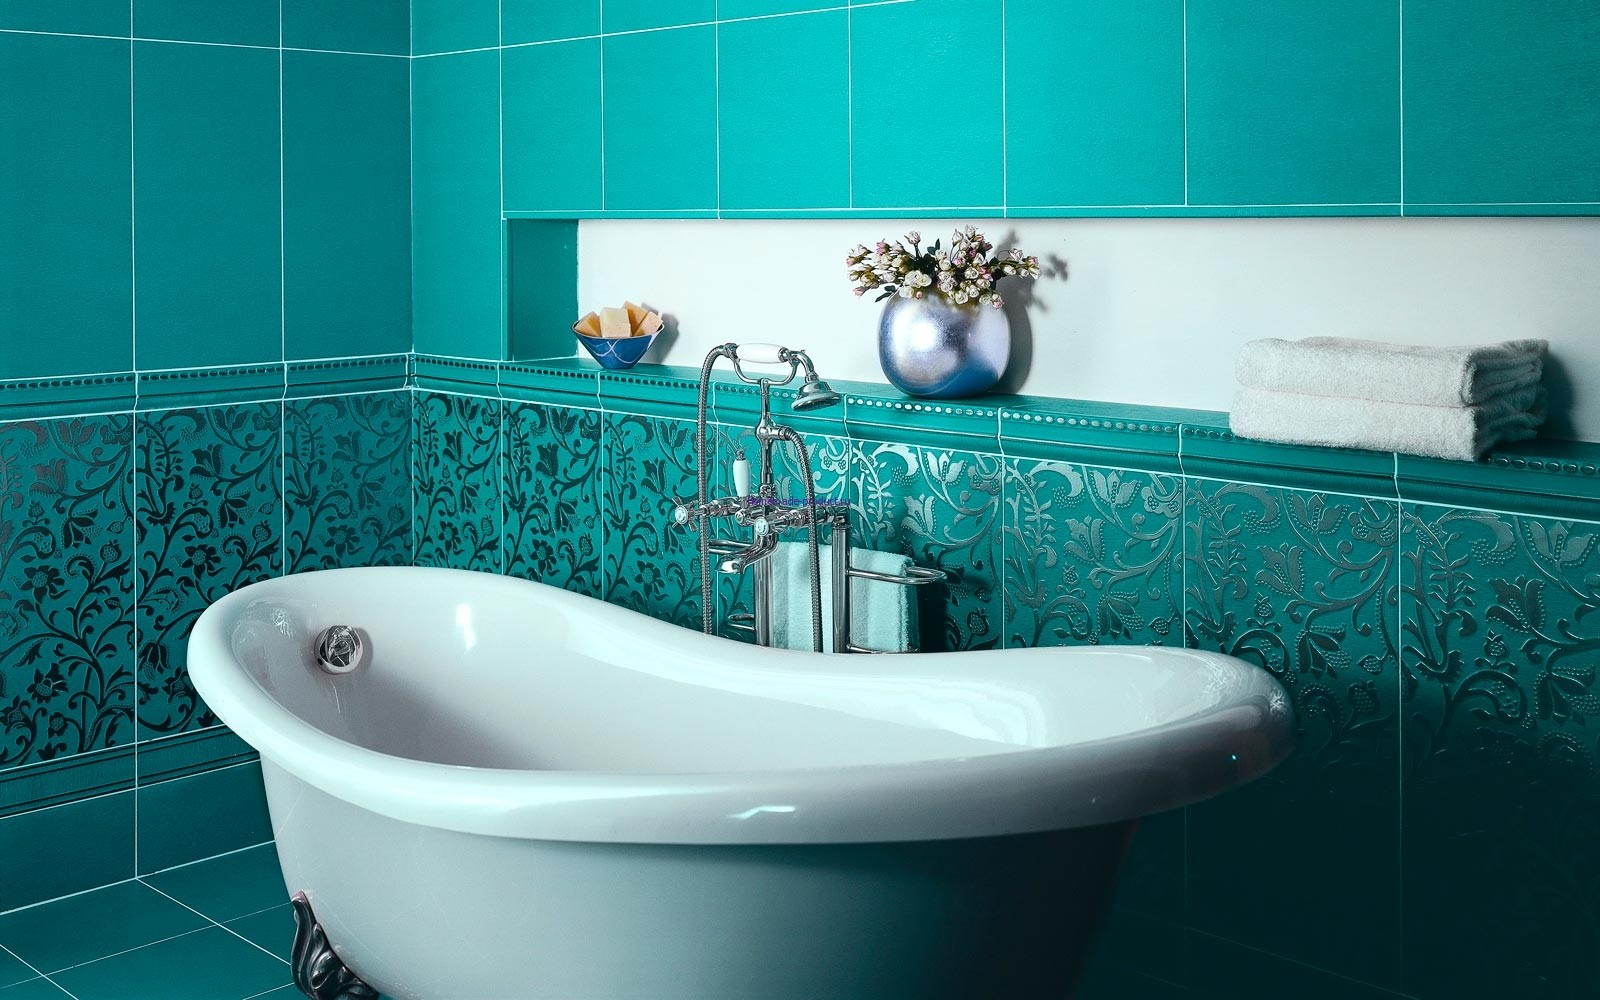 Кафельная плитка яркого и насыщенного бирюзового цвета для ванной комнаты 